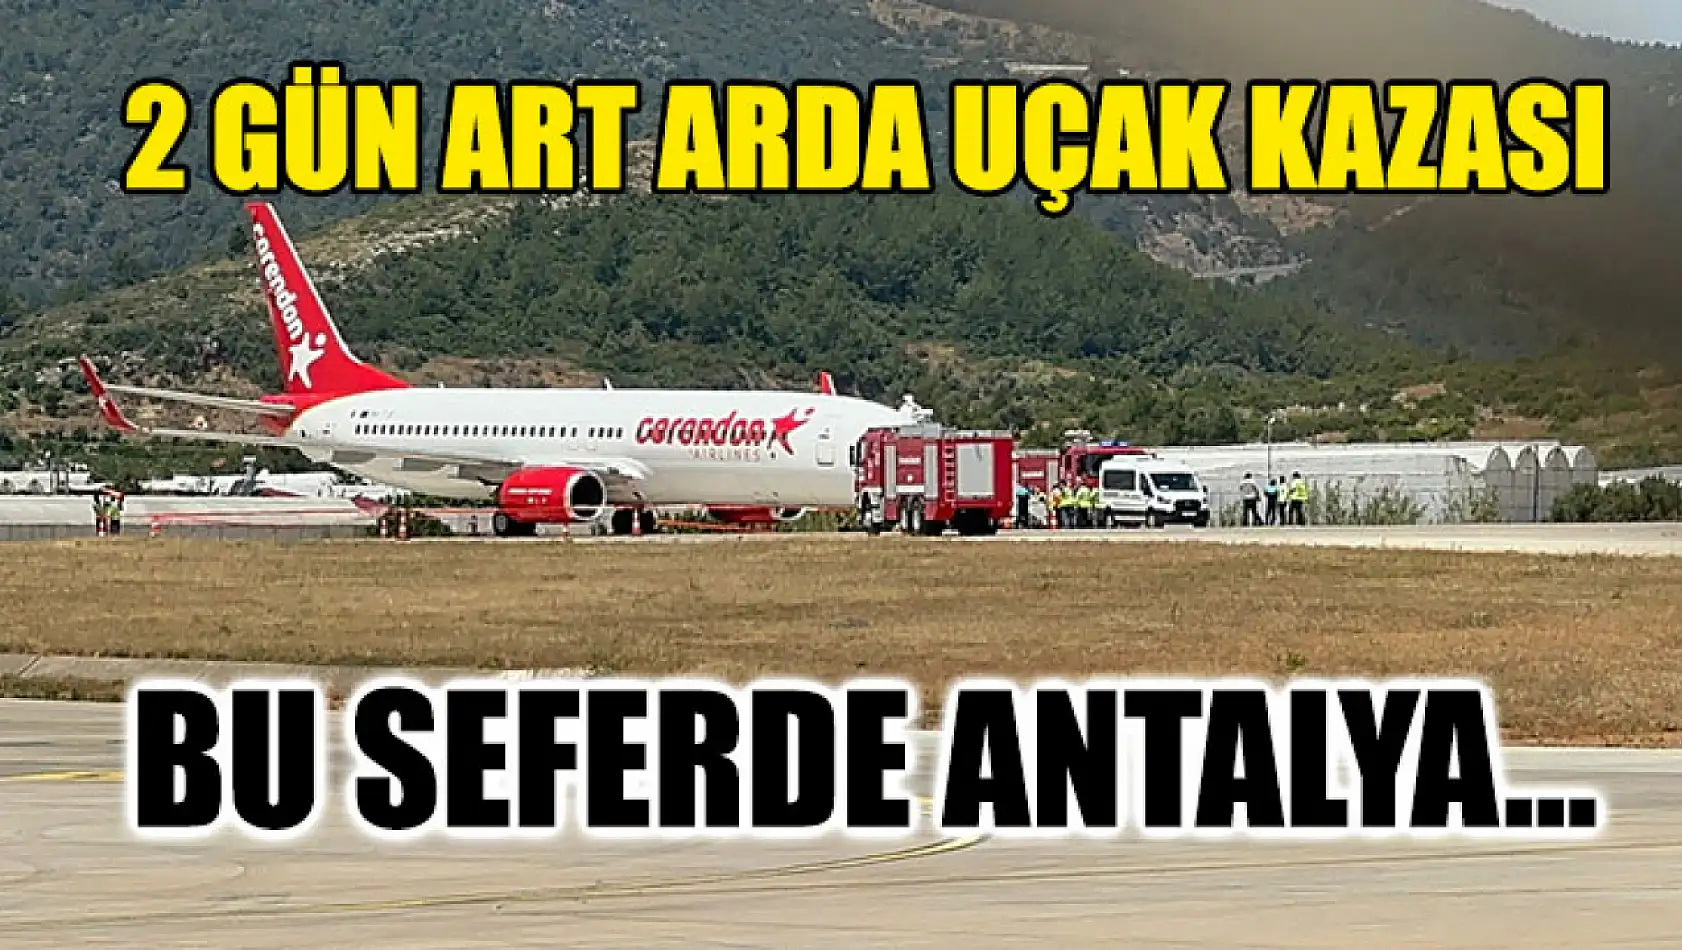 2 Gün Art Arda Uçak Kazası Bu Seferde Antalya…